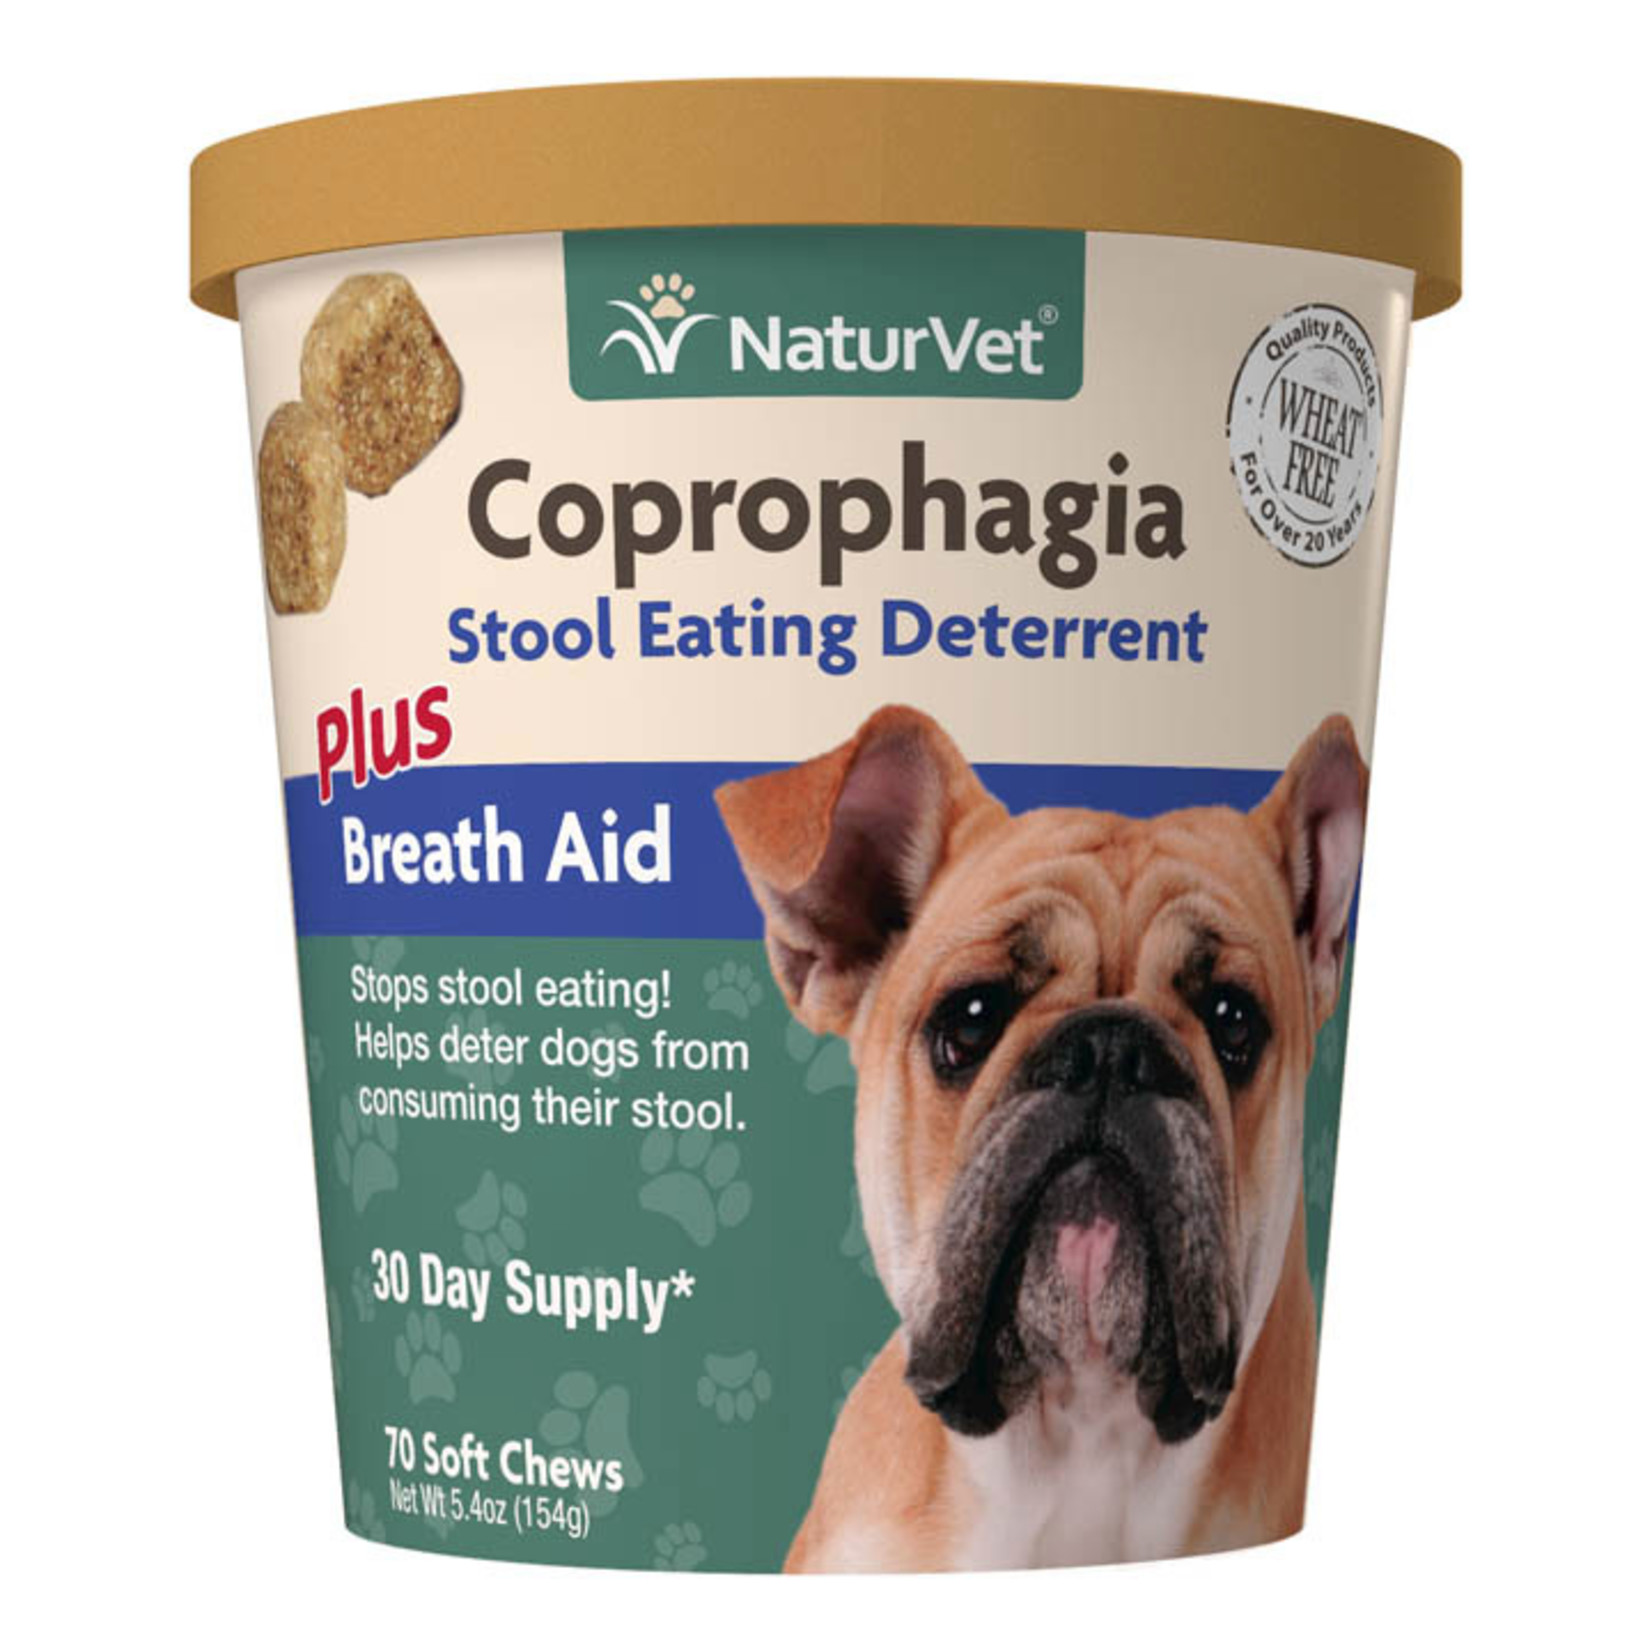 NaturVet NaturVet Coprophagia Stool Eating Deterrent Soft Chews Plus Breath Aid